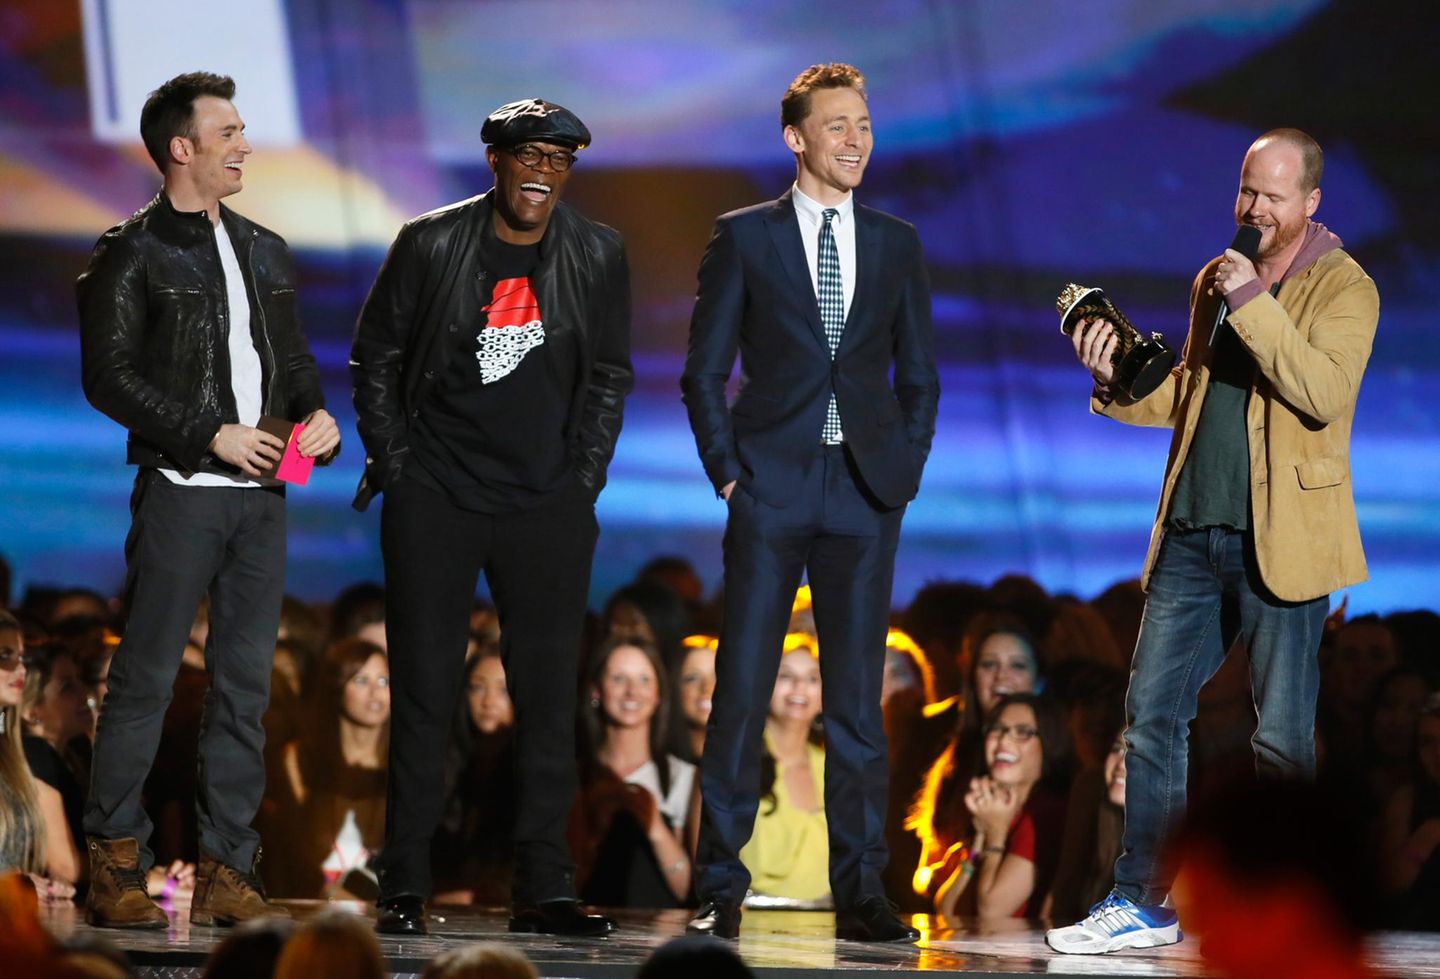 Die Crew von "Marvel's The Avengers", Chris Evans, Samuel L. Jackson, Tom Hiddleston und Joss Whedon, kann sich über den Award für den "Film der Jahres" freuen.